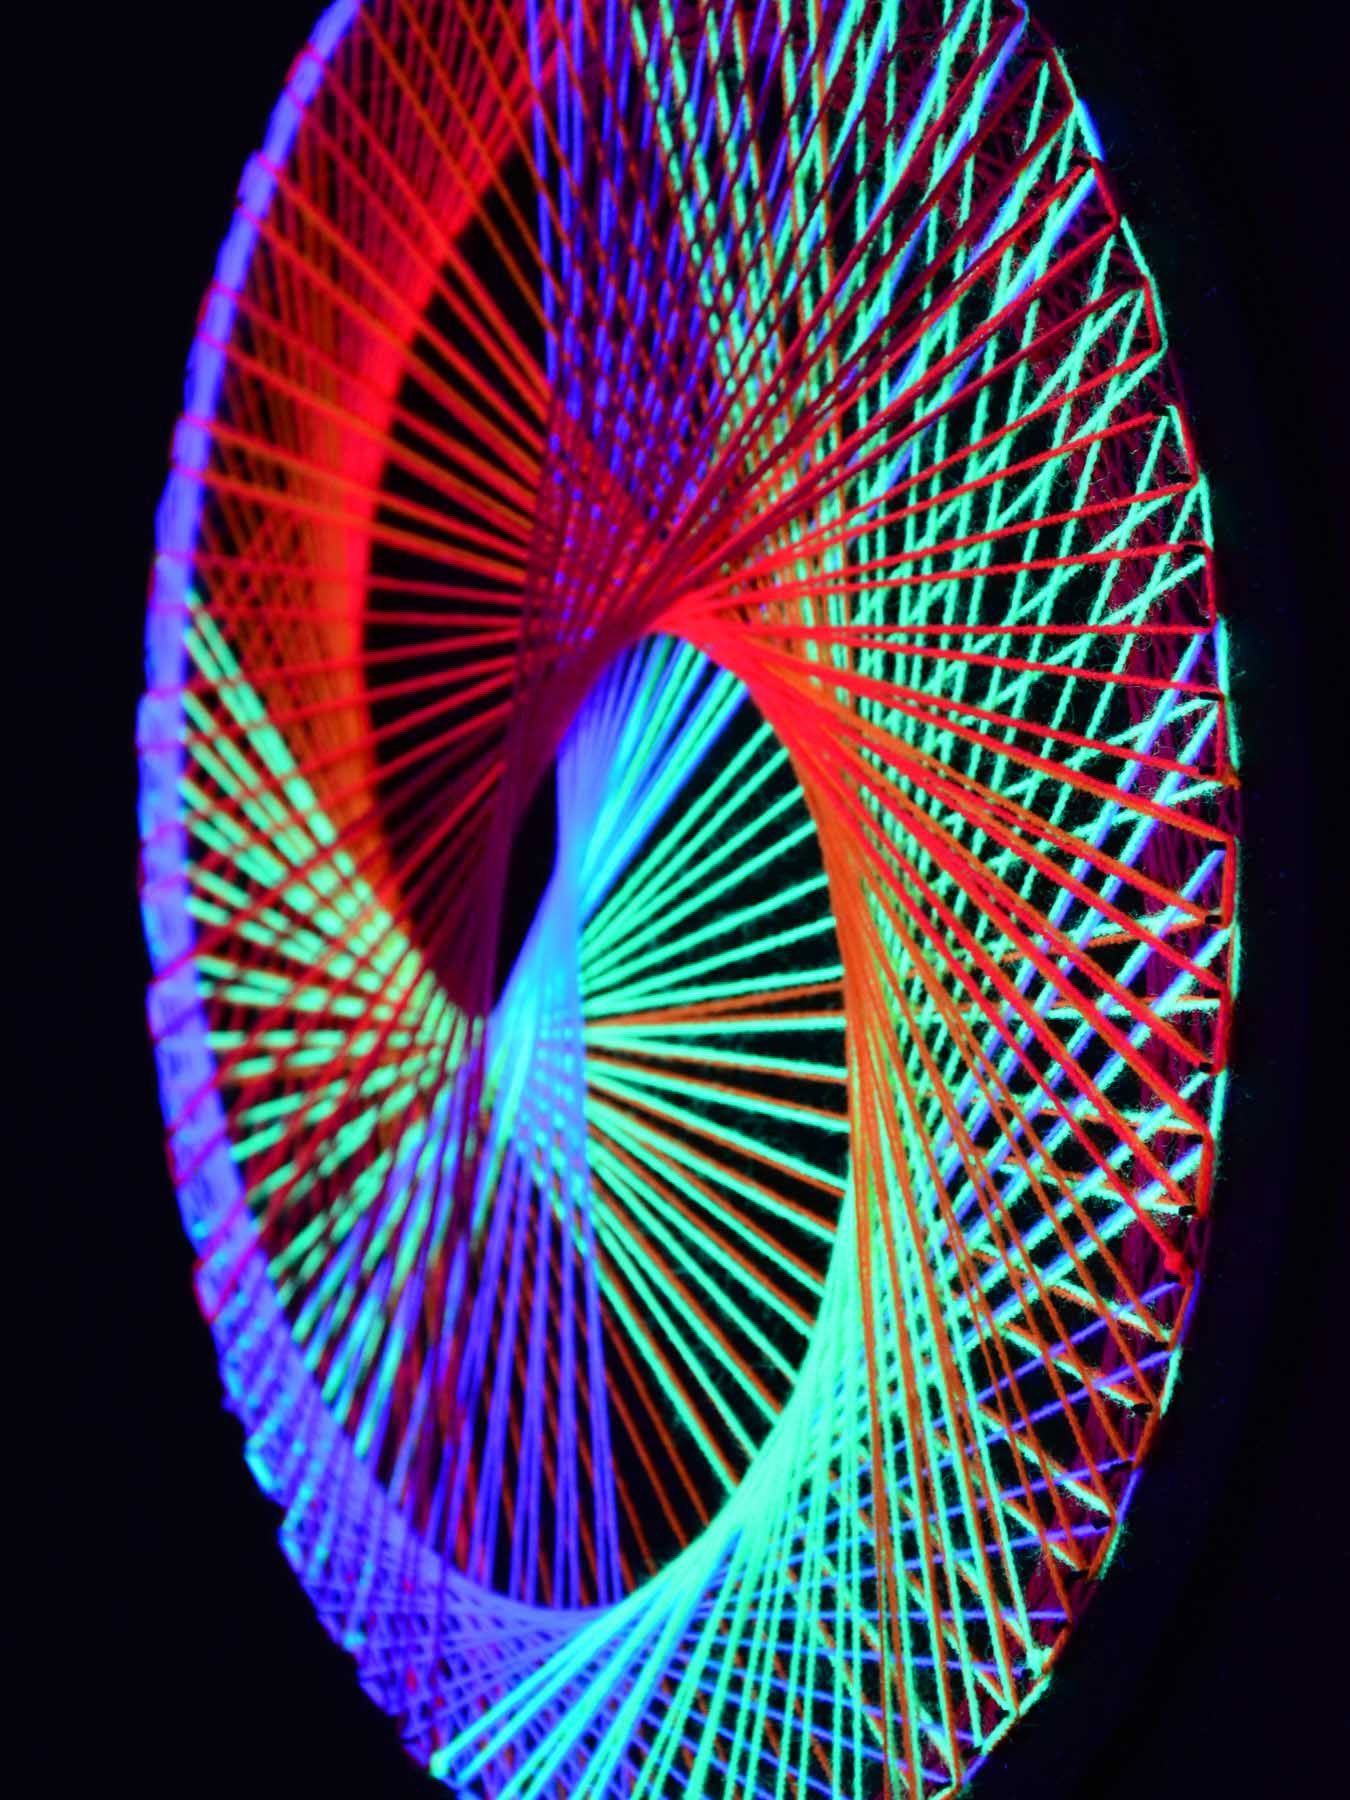 Spirale UV-aktiv, Fadendeko Schwarzlicht unter 50cm, Dekoobjekt Schwarzlicht Multivitamin", 2D PSYWORK leuchtet StringArt "Neon